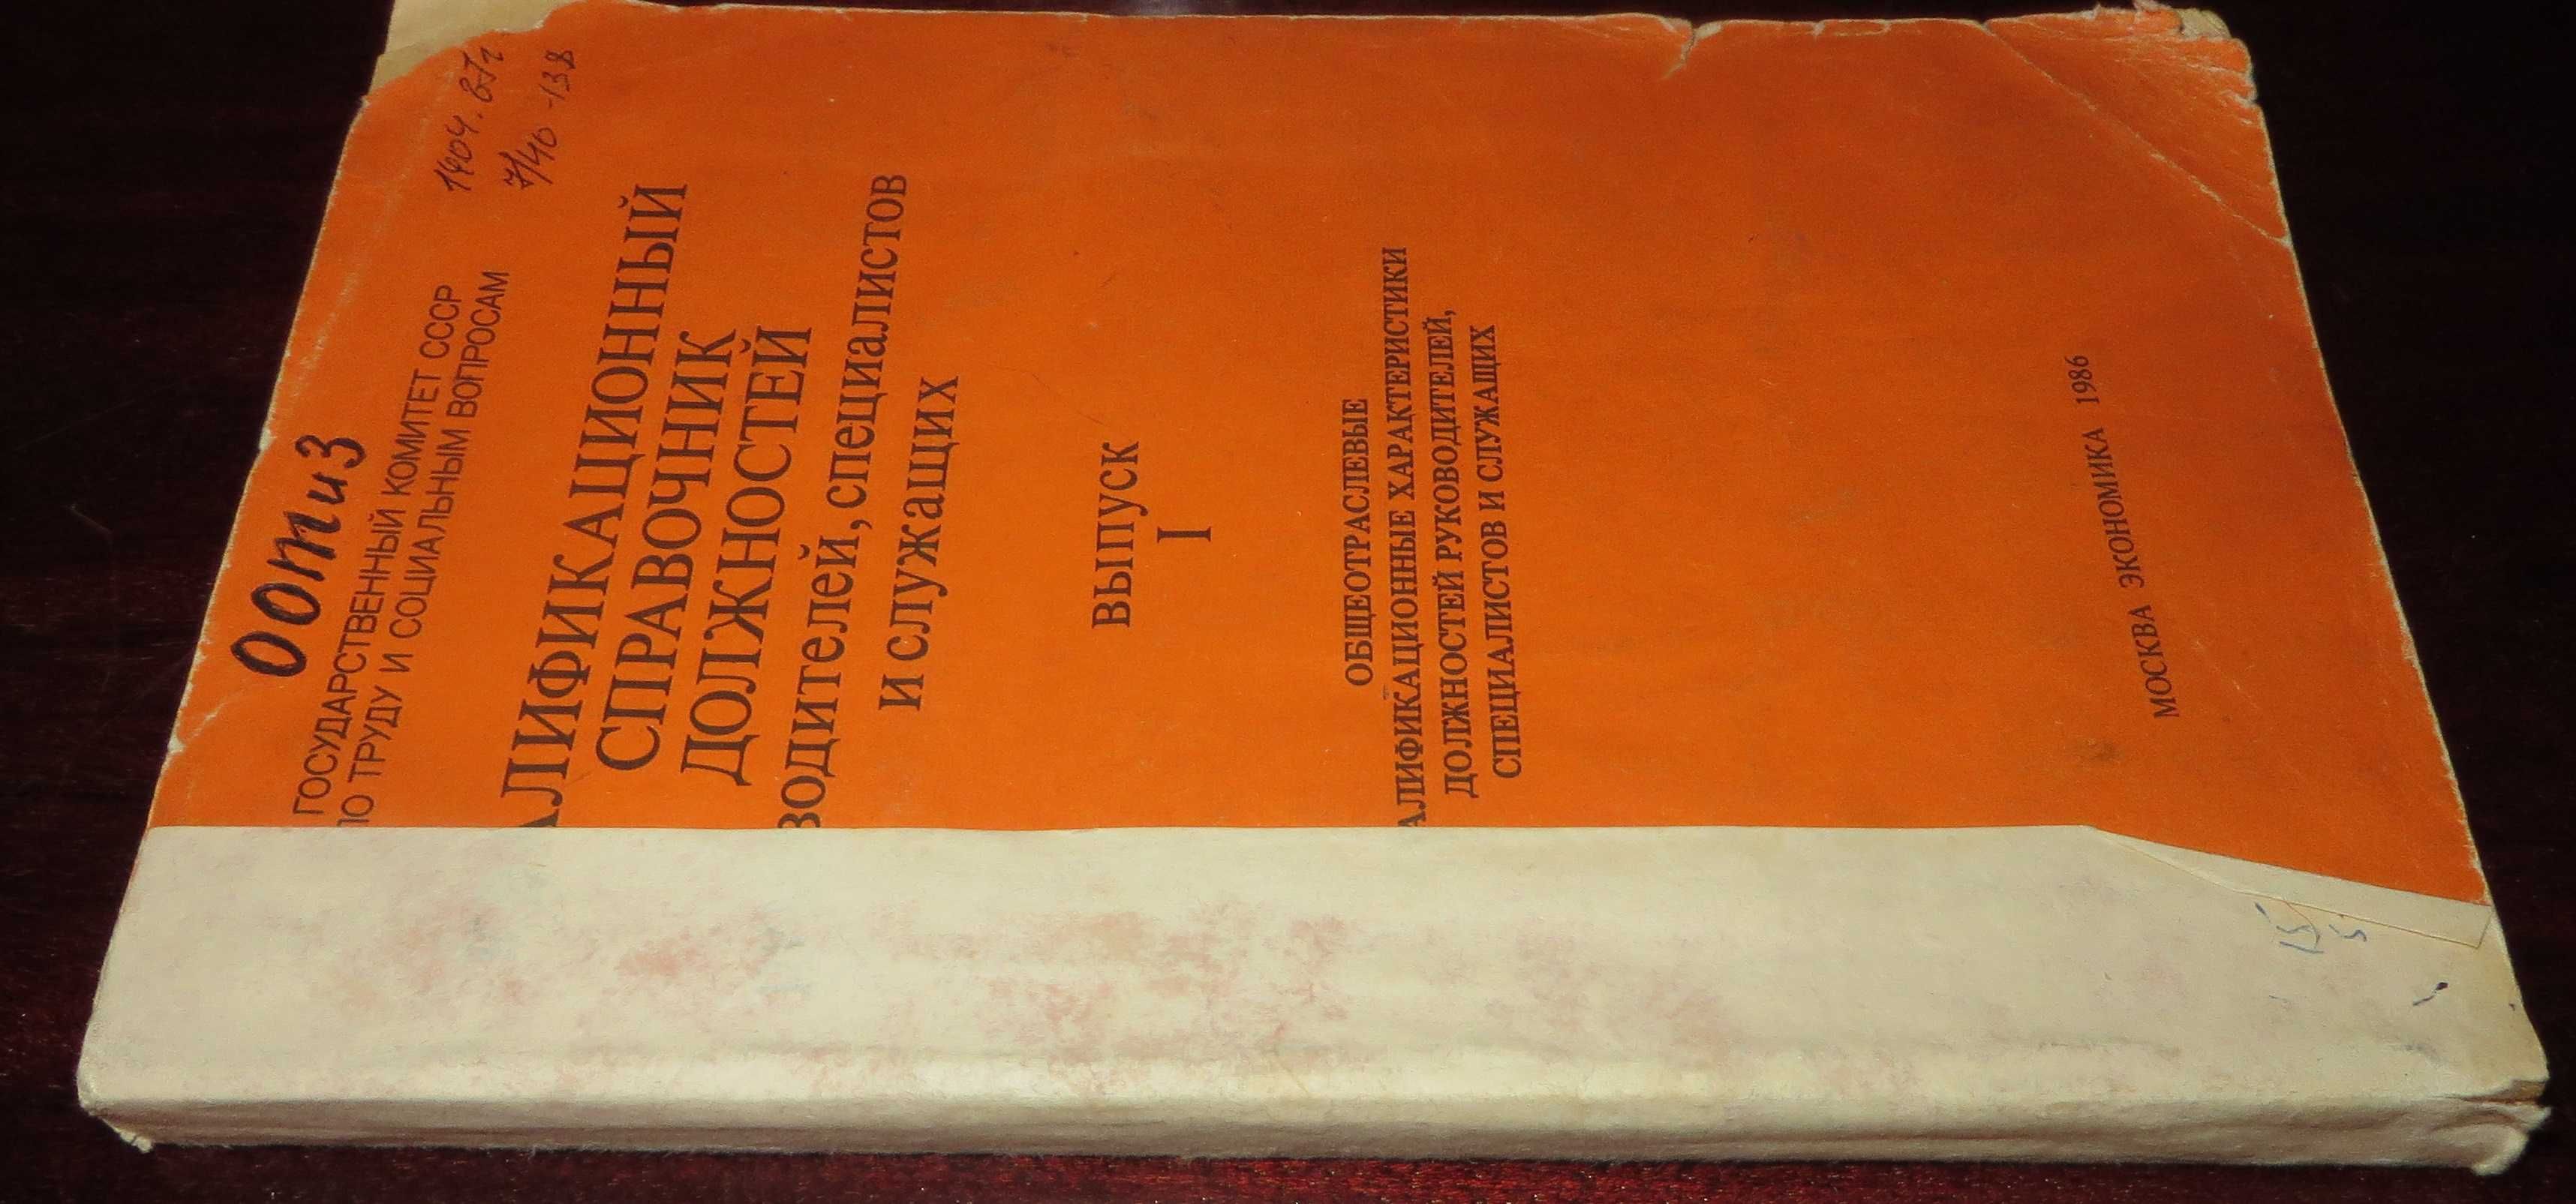 книга Квалификационный справочник должностей руководителей 1986г